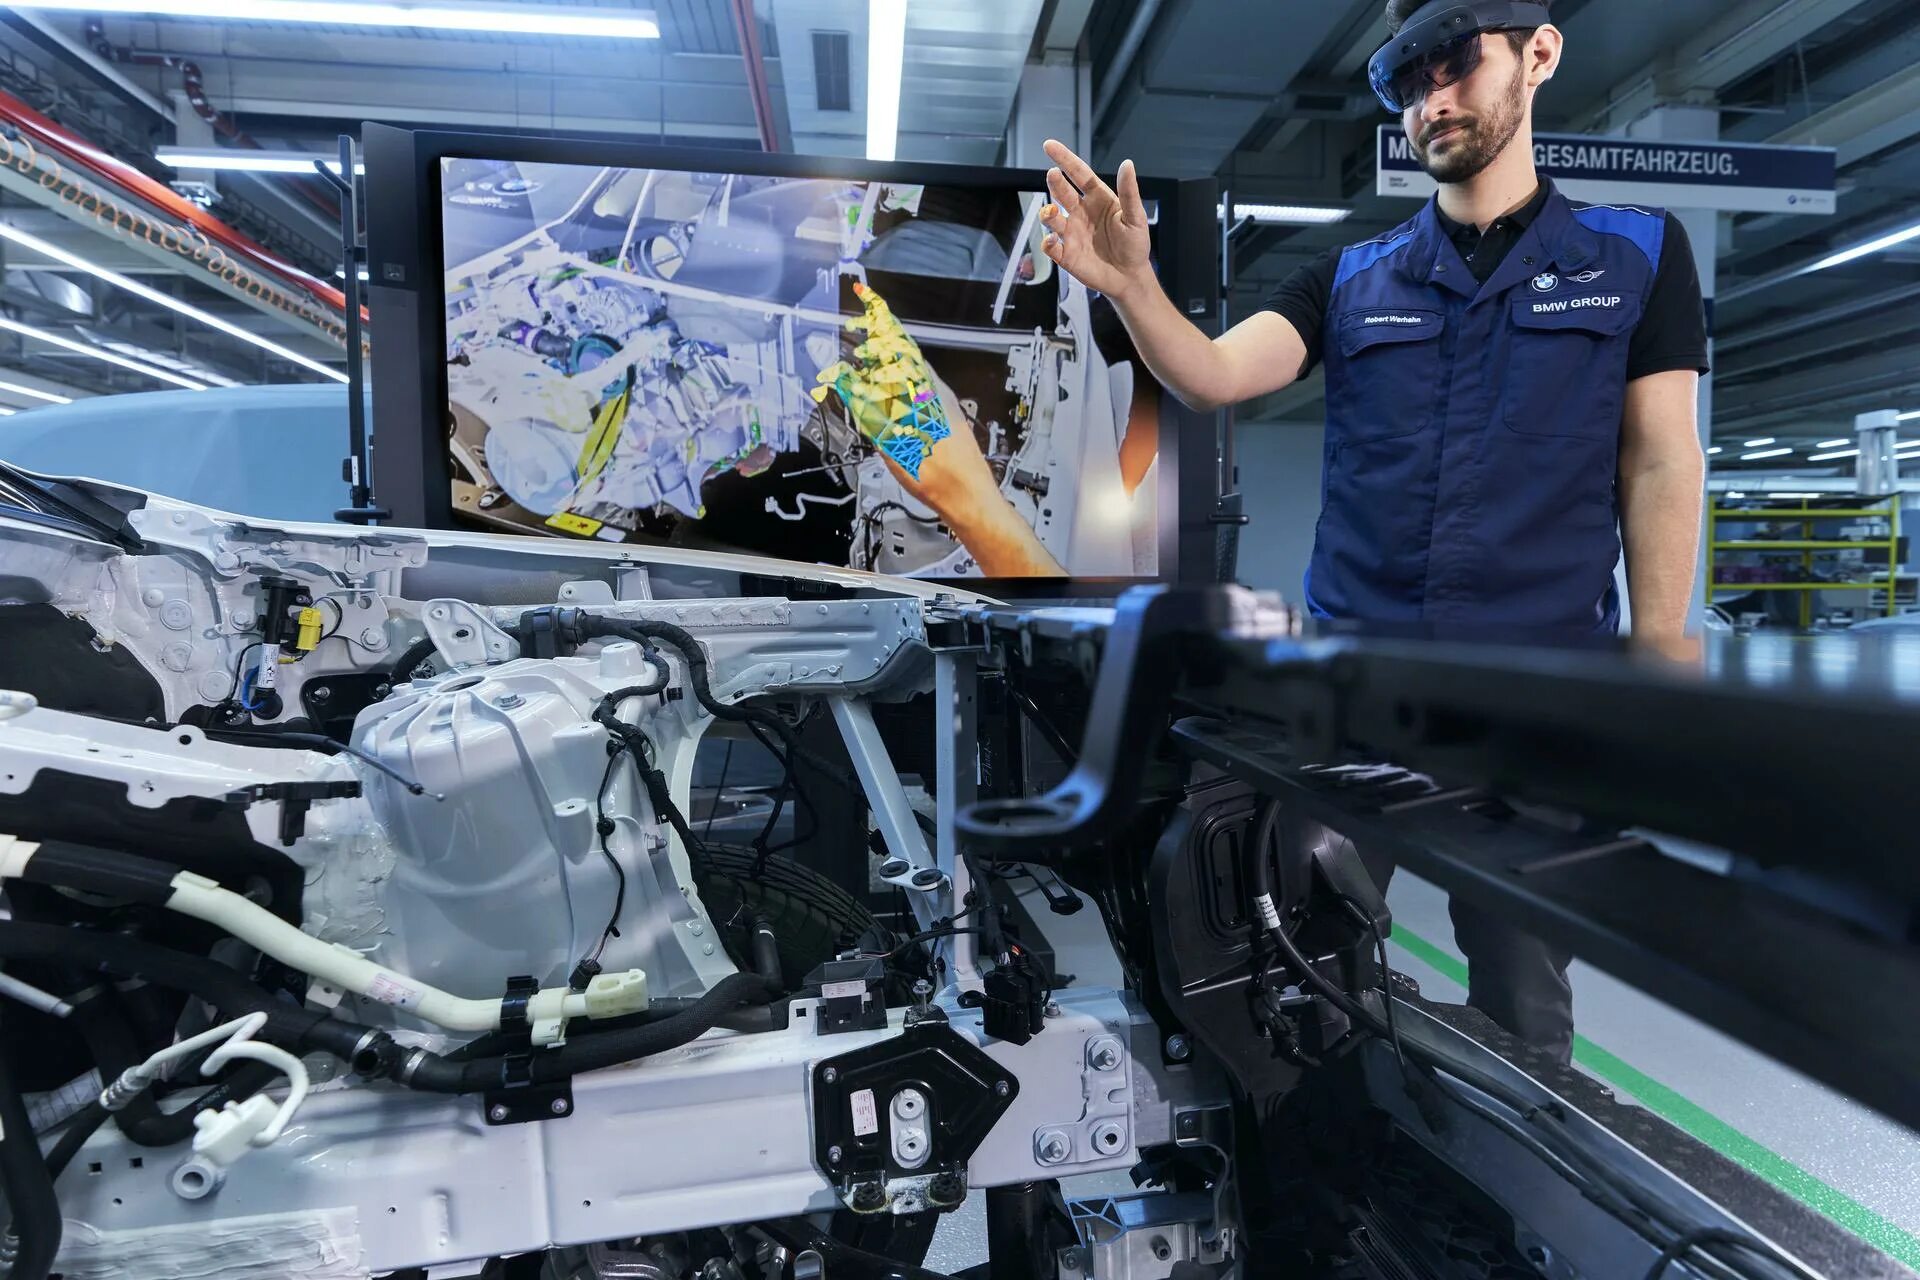 Vr пол. BMW augmented reality. Дополненная реальность в автомобилестроении. Технологии виртуальной и дополненной реальности. Технологии дополненной реальности в промышленности.